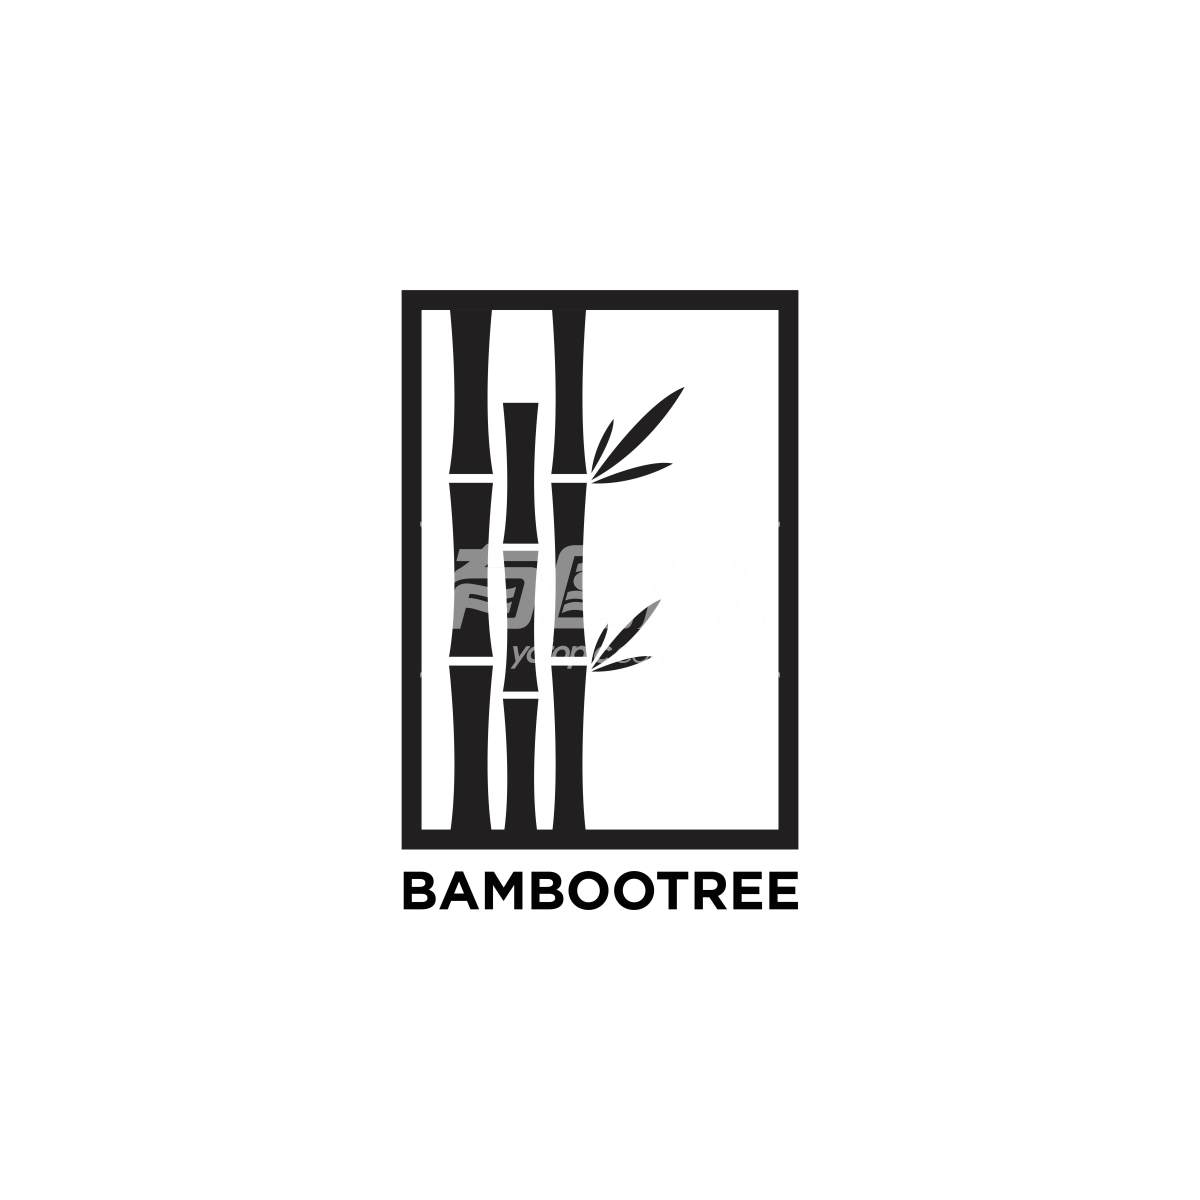 环保竹制品公司Logo设计